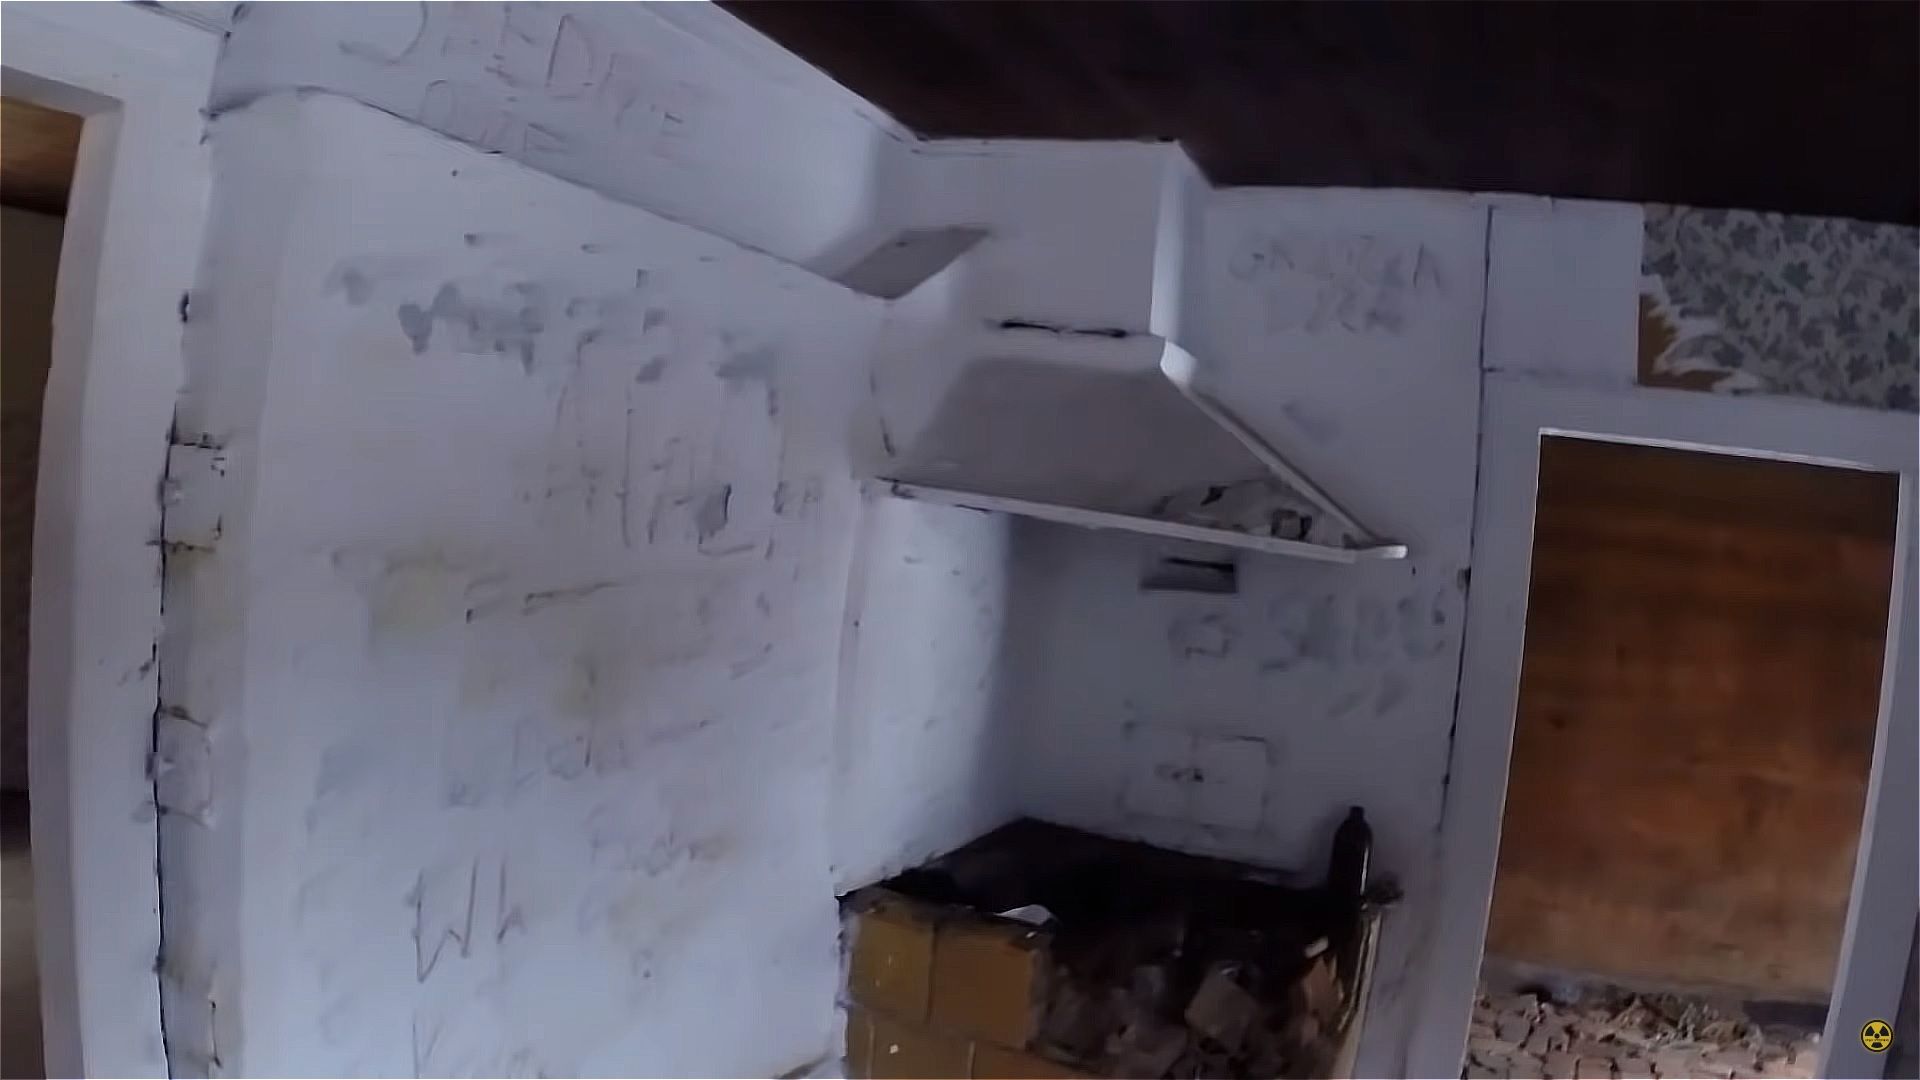 Kultowy dom z serialu Ranczo został zrównany z ziemią. Fot. kadry z kanały YouTube @Urban Explorers (2).jpg